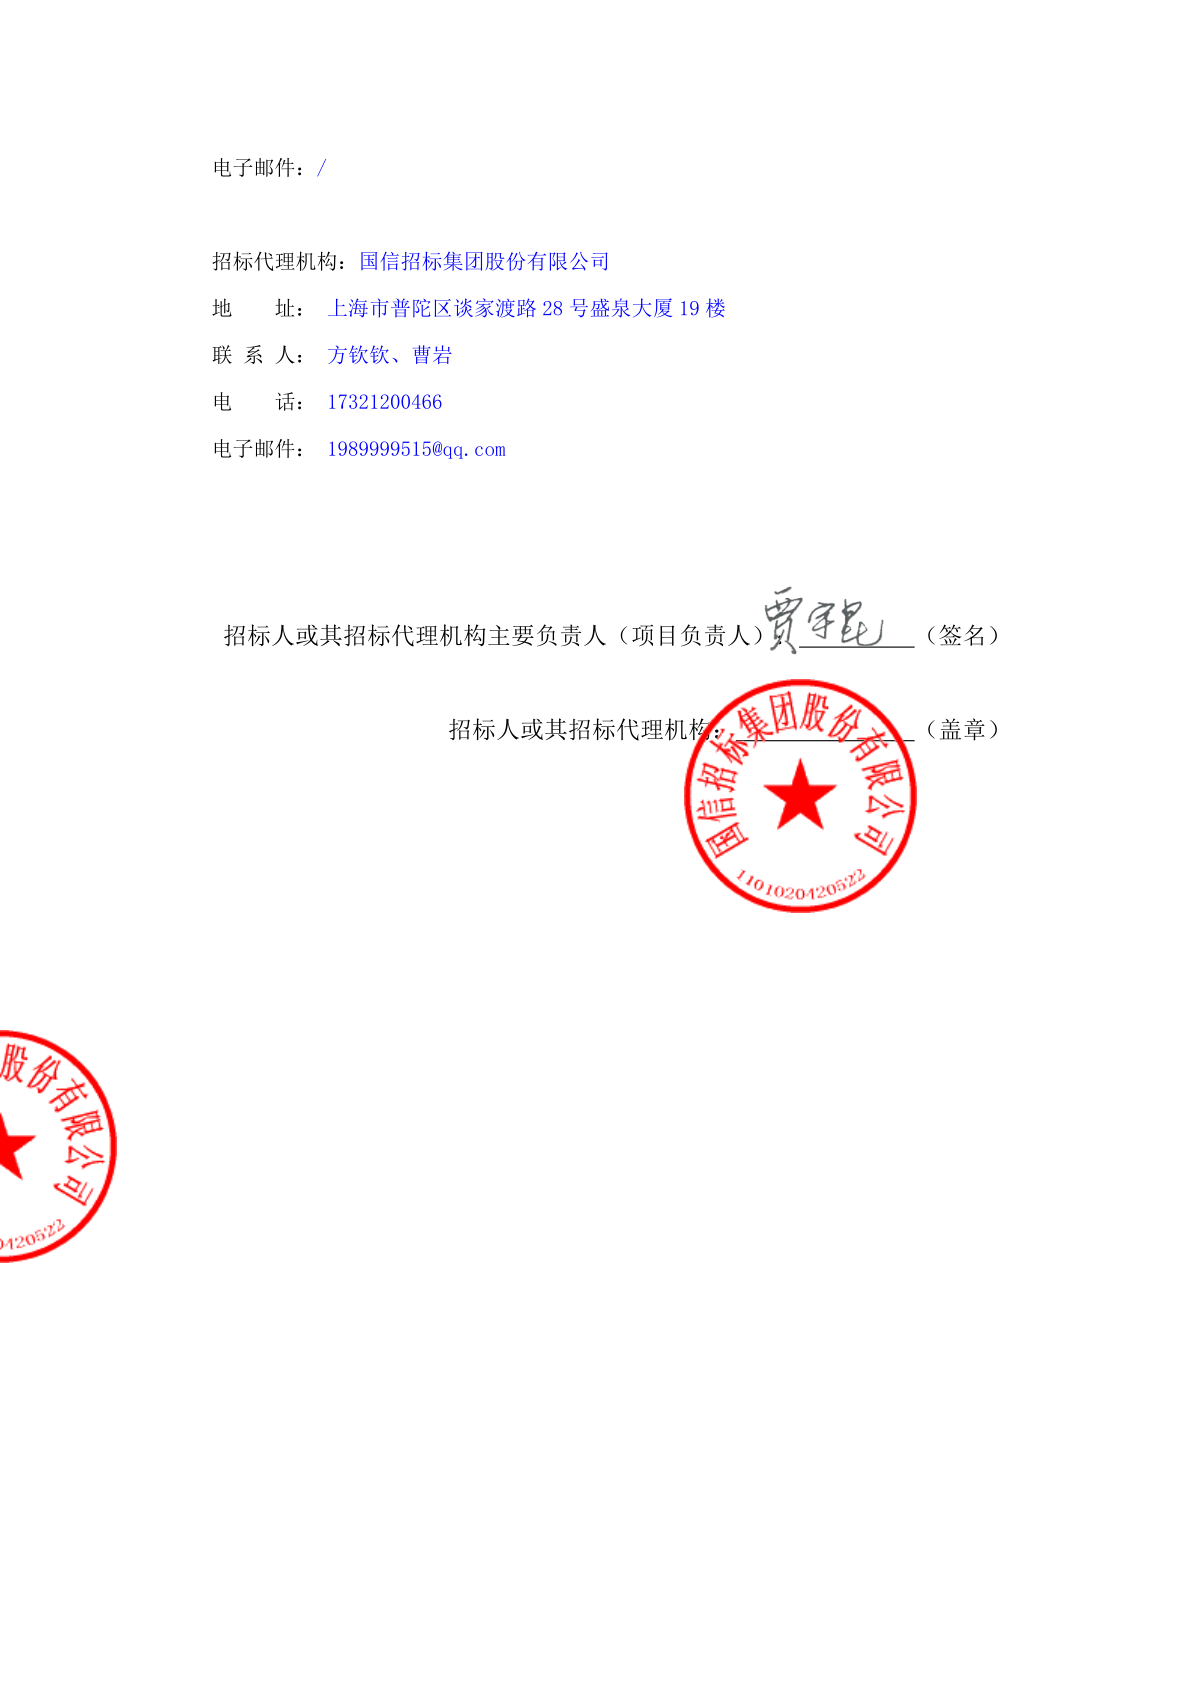 中国农业银行股份有限公司上海市分行宣传用品(生活电器)入围项目招标